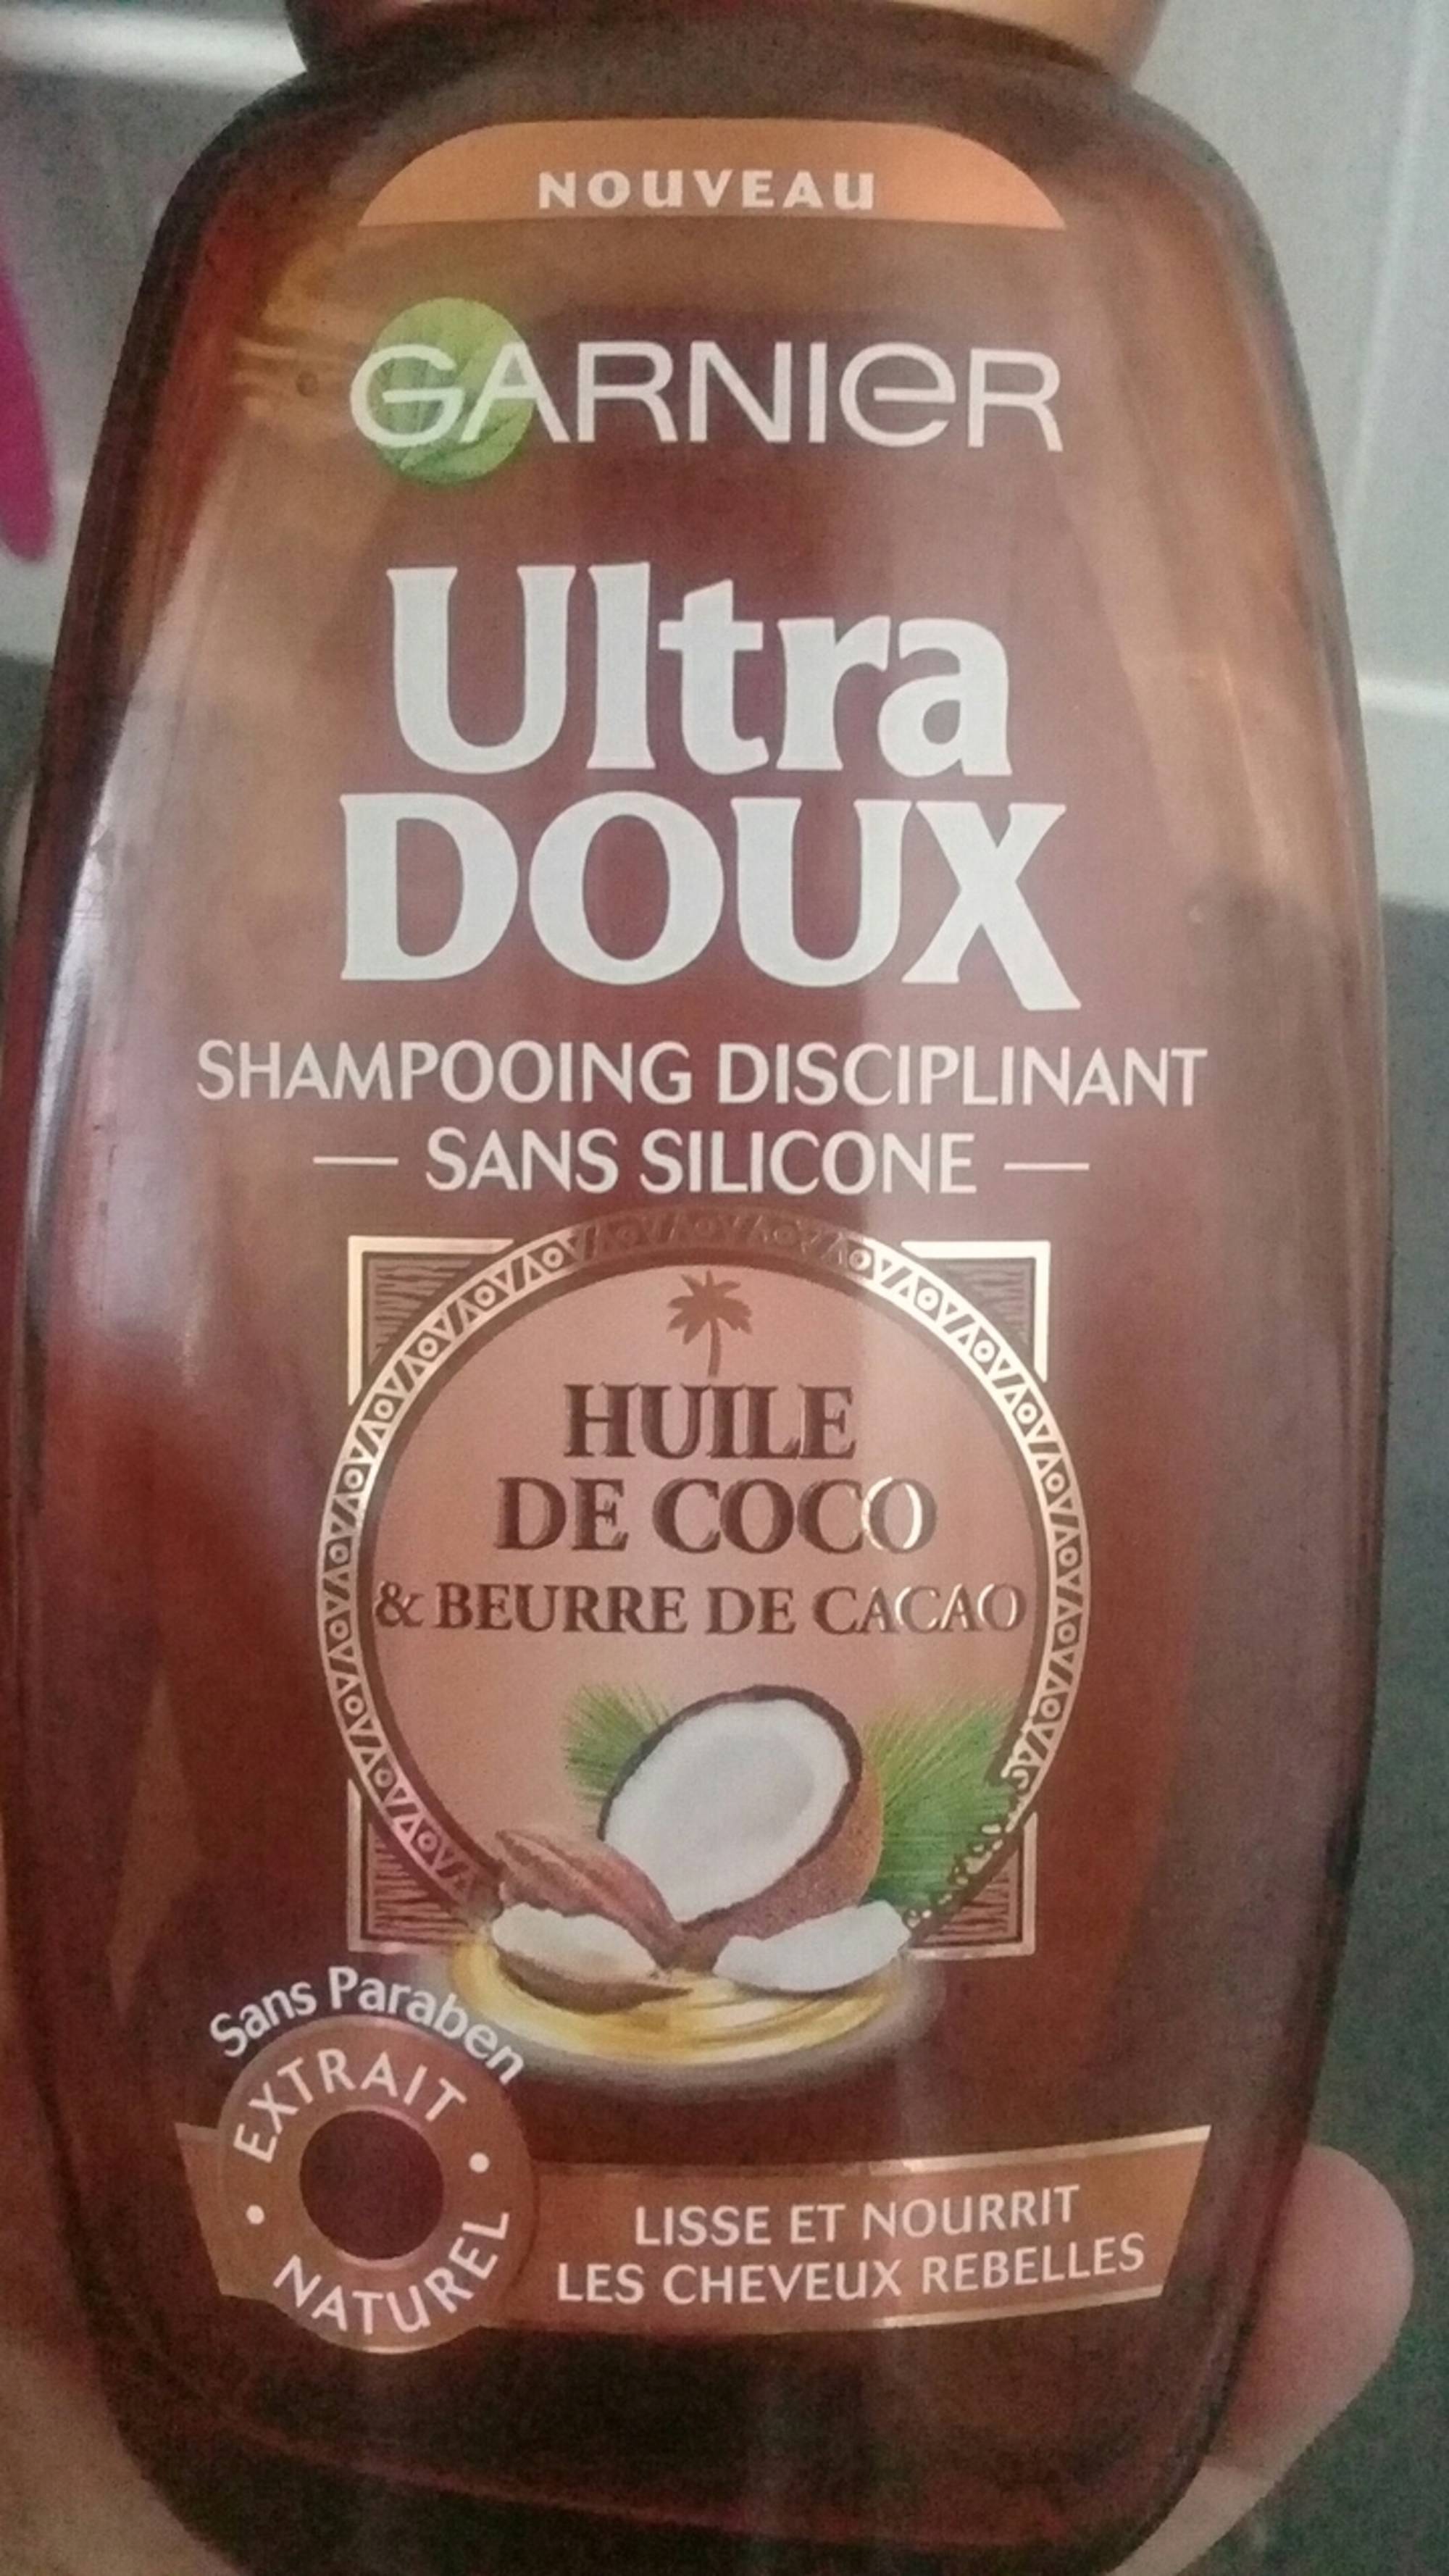 GARNIER - Ultra doux - Shampooing huile de coco & beurre de cacao